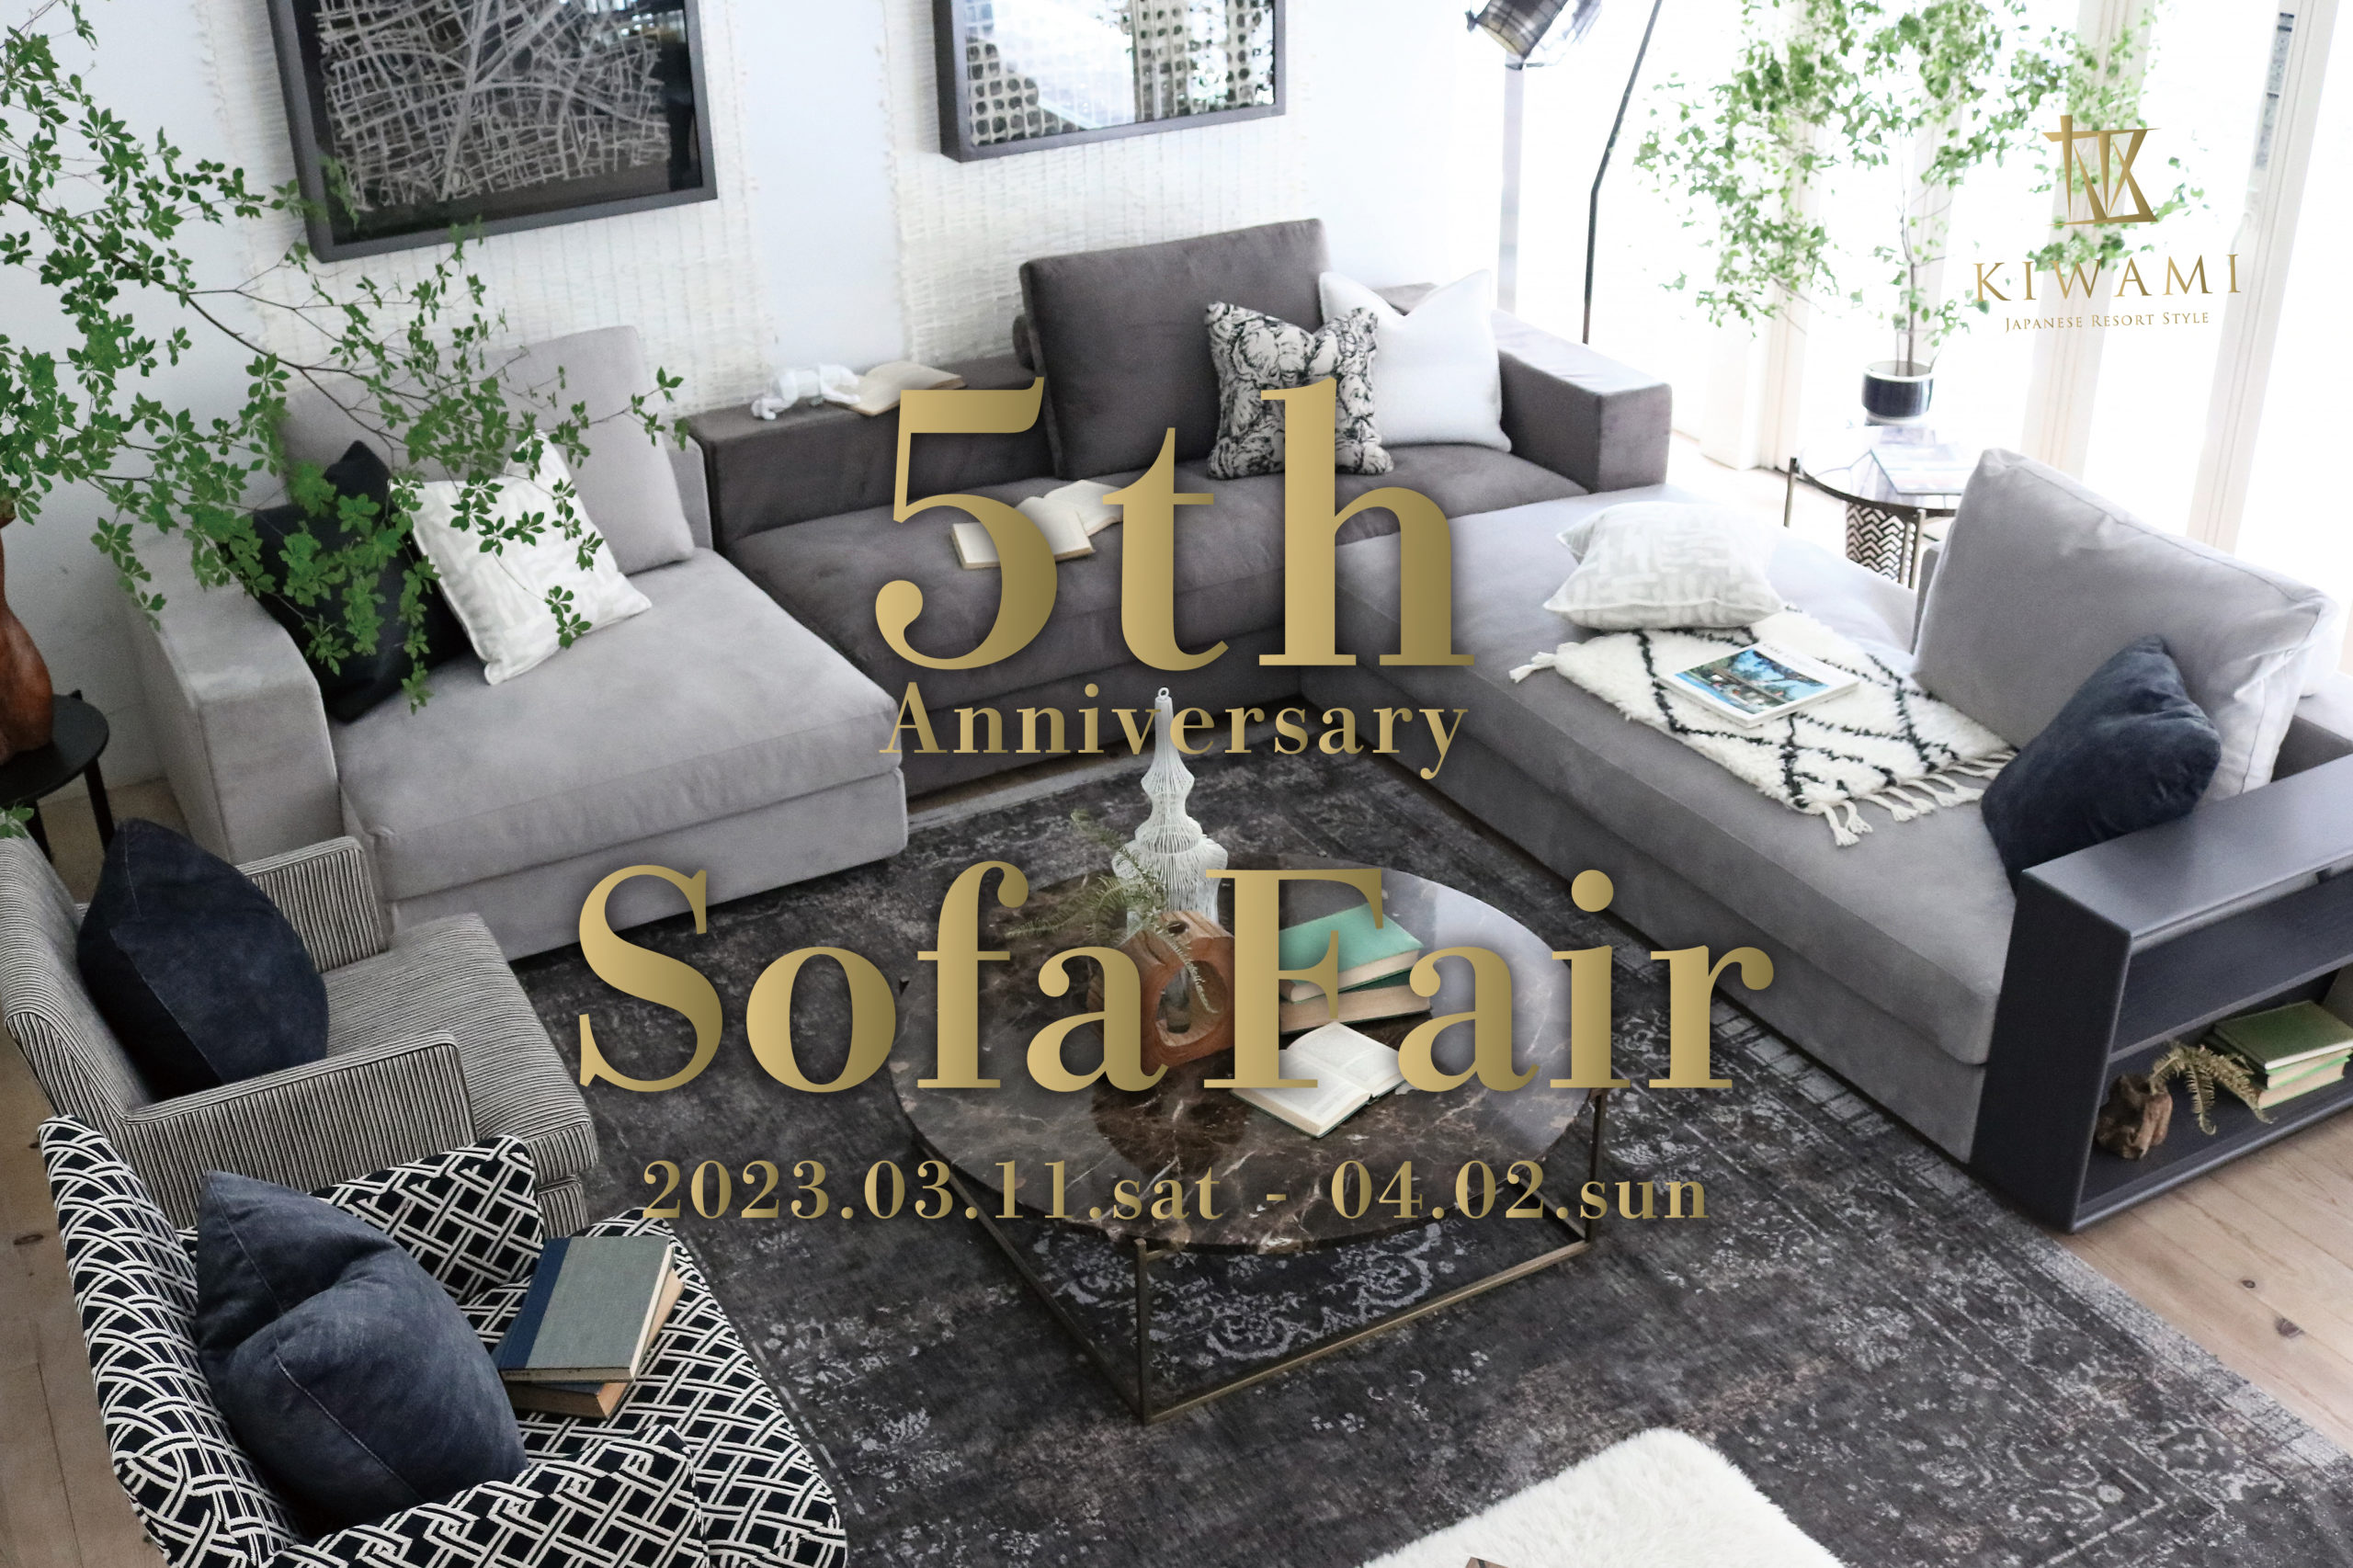 5th Anniversary Sofa Fair!!